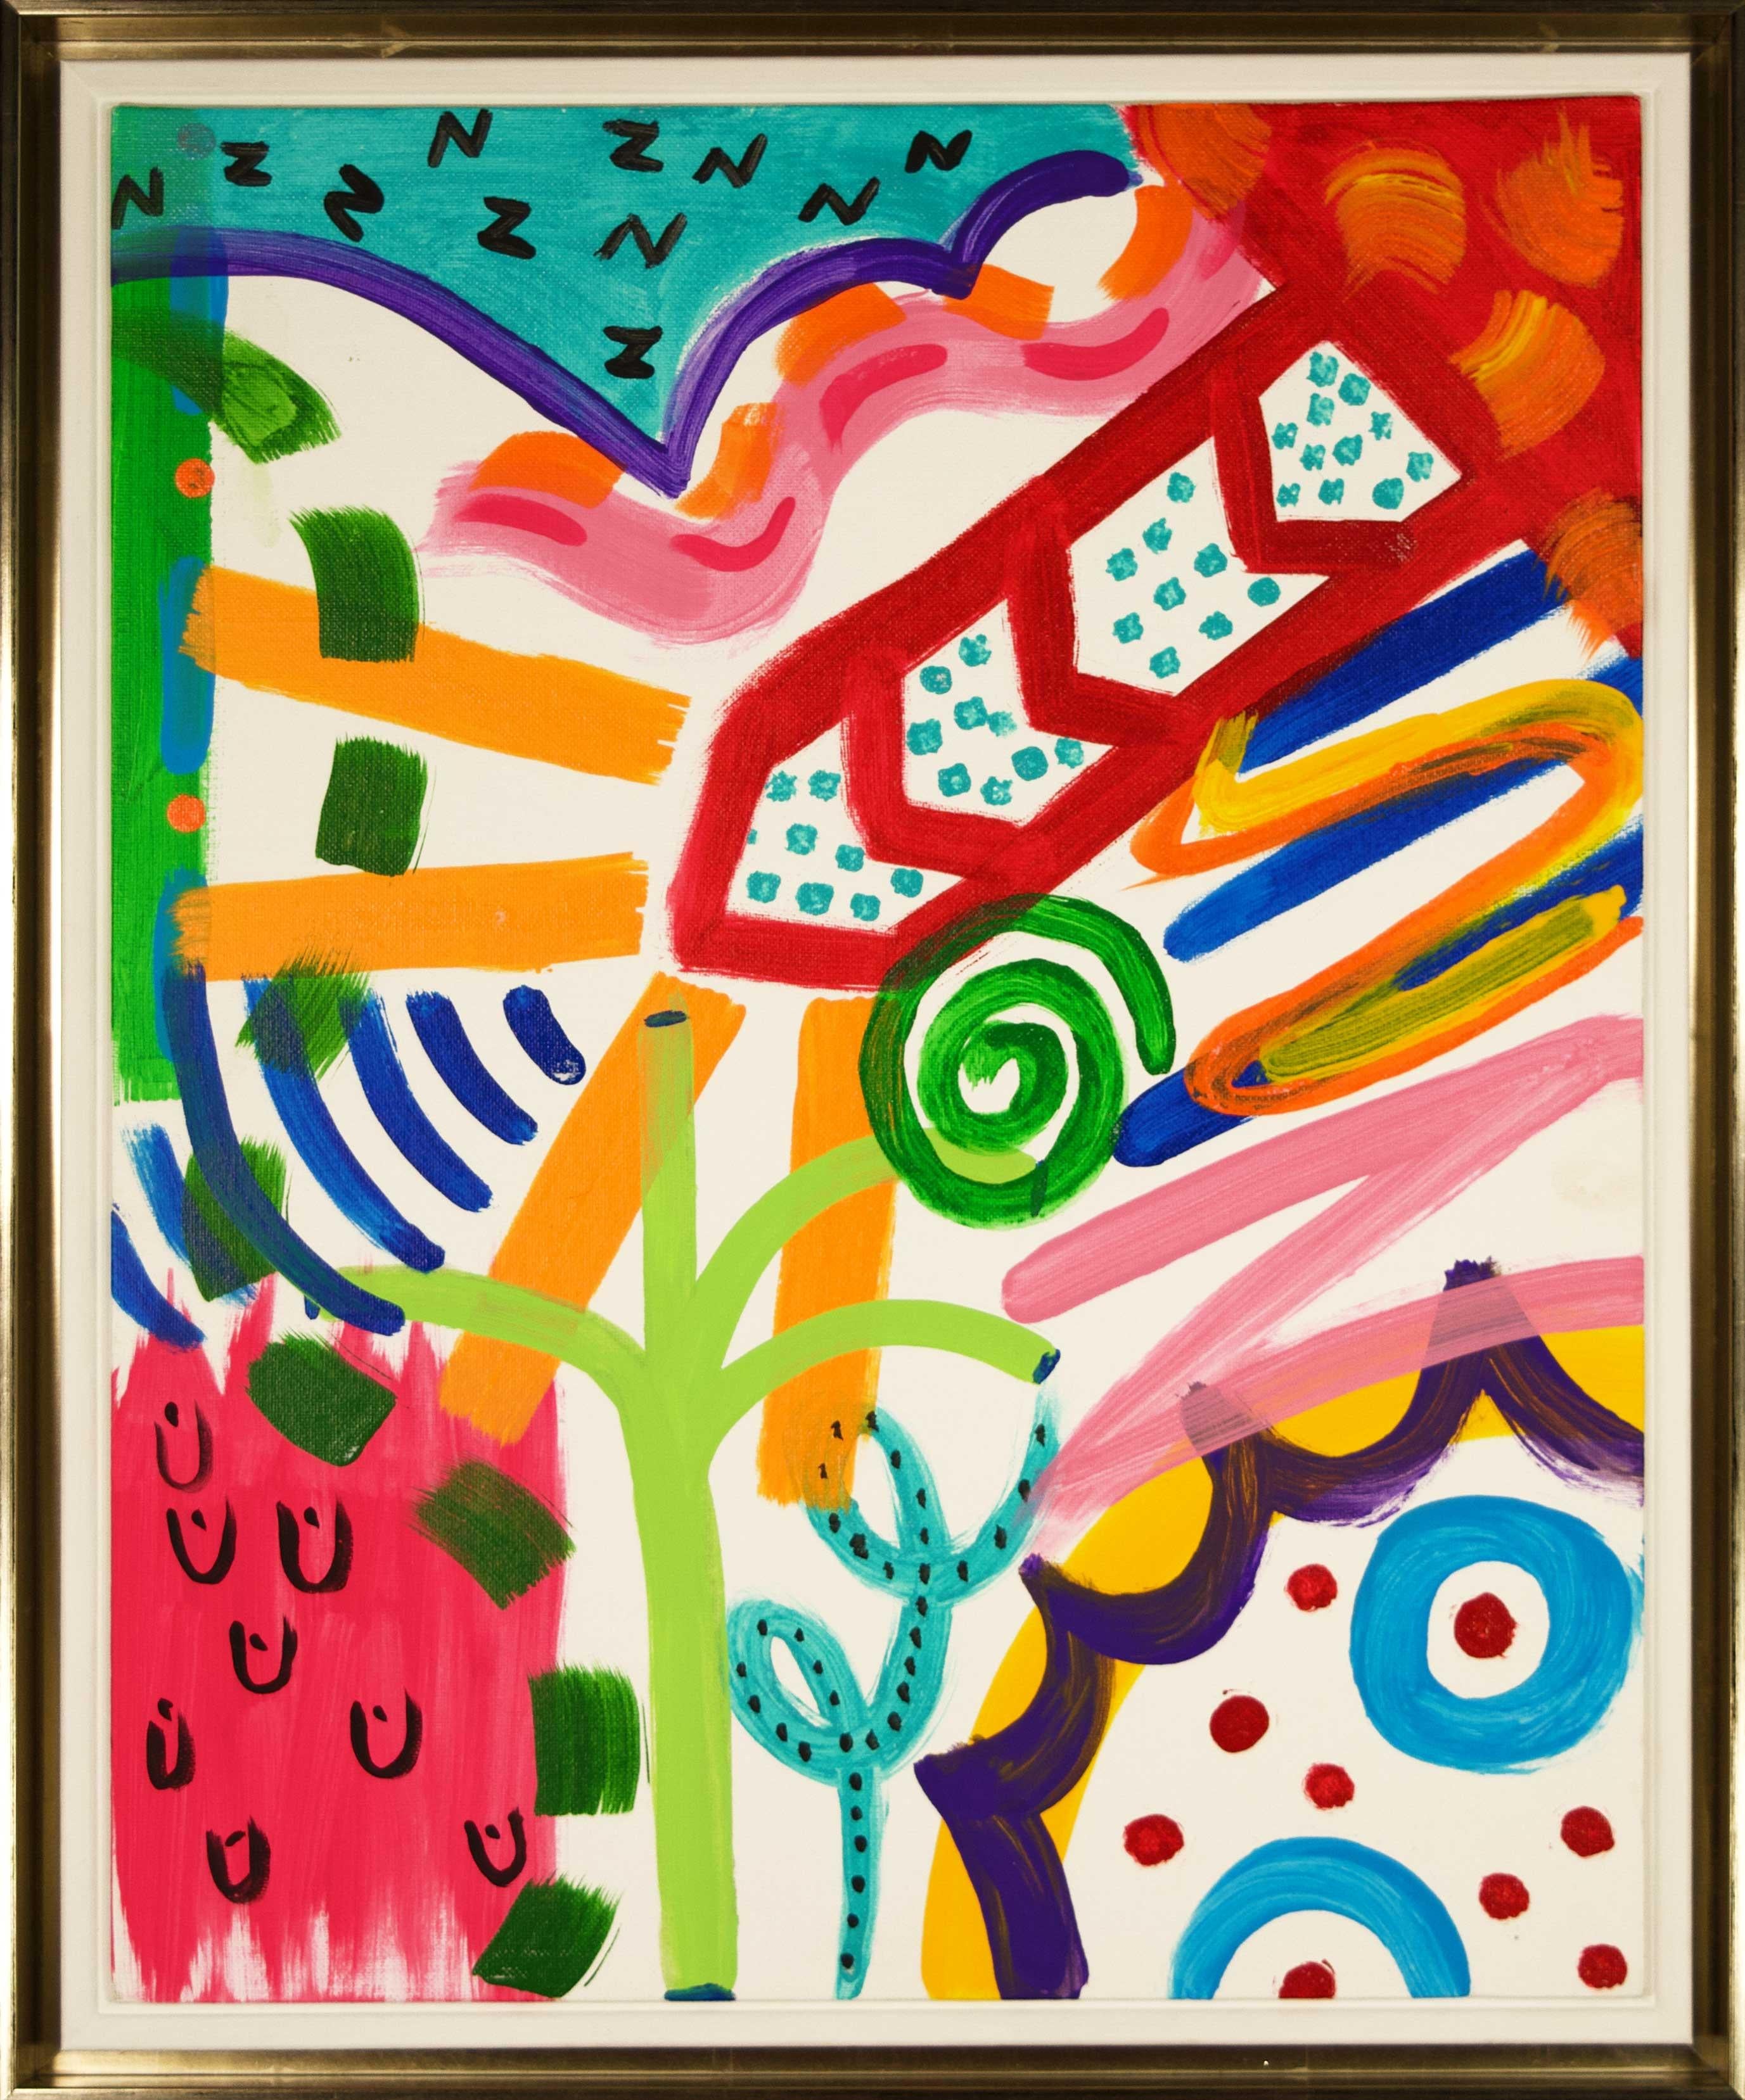 Faisant partie de la série "The Chaos of My Mind" de l'artiste, le tableau "Doomsday" d'Ariel McClearin est une œuvre originale signée réalisée à l'acrylique sur carton entoilé. Combinant les teintes richement saturées du Pop Art avec le mouvement